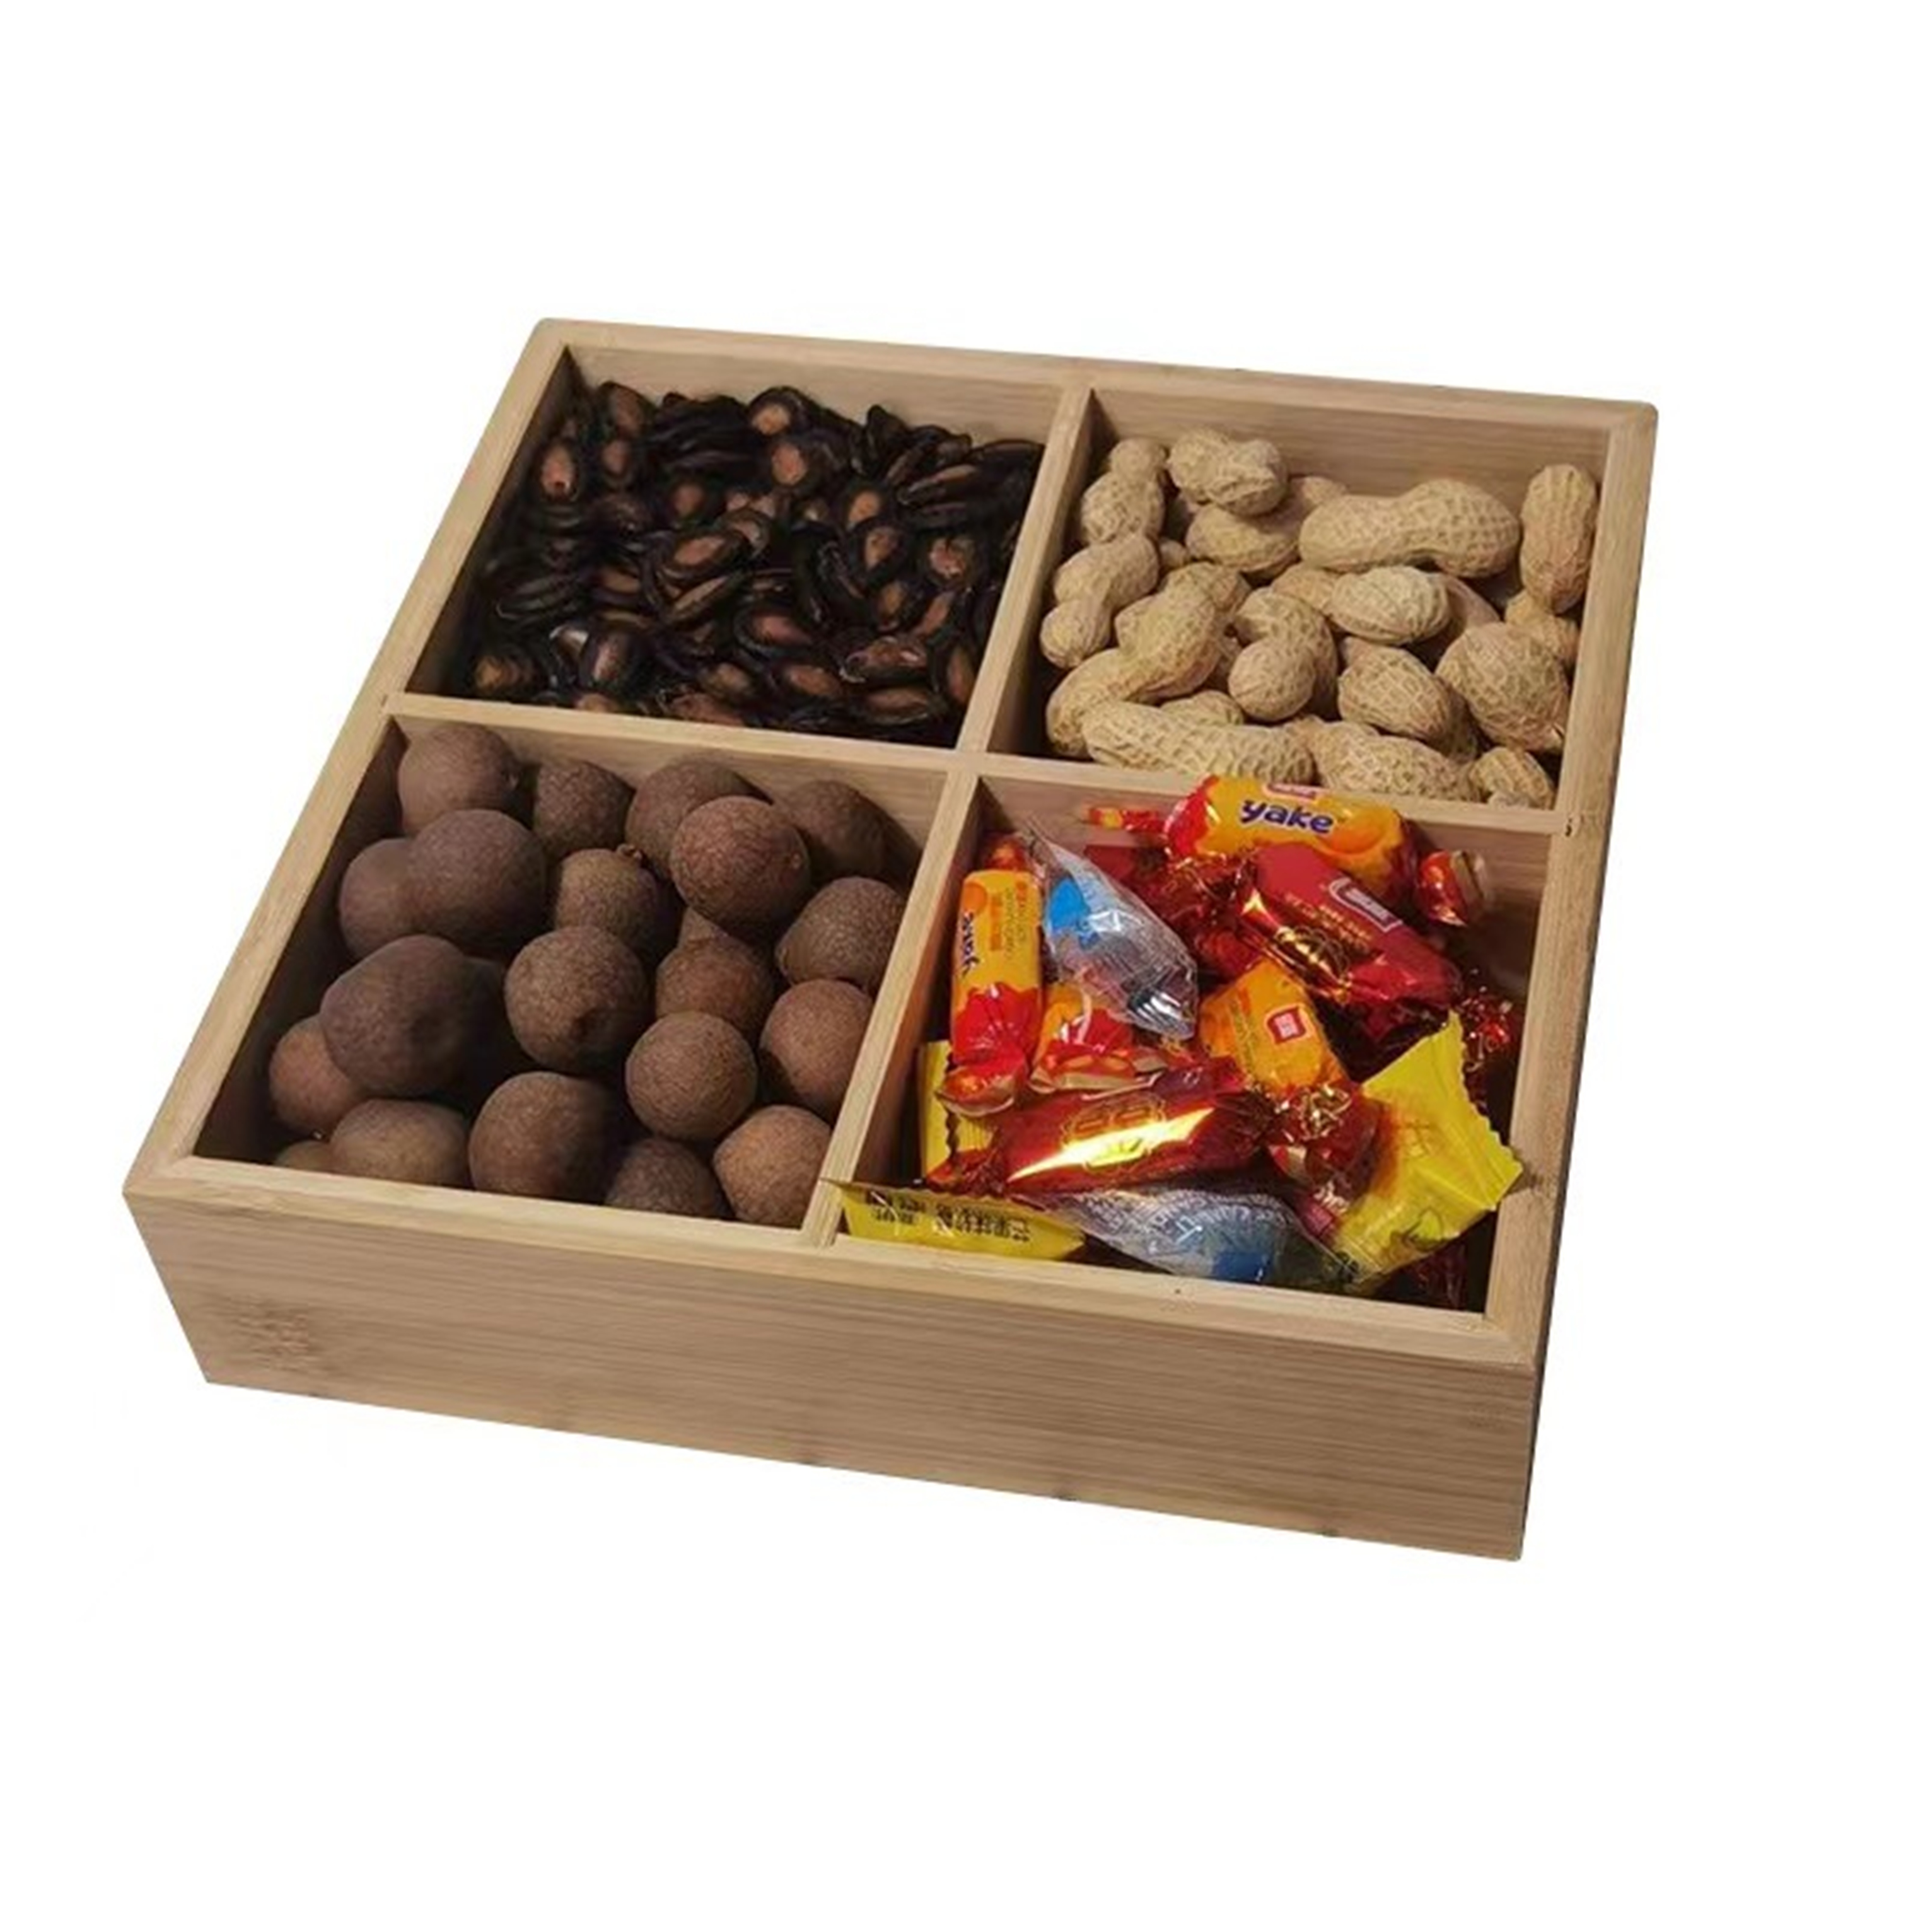 Dried fruit box, snack box, nut storage box